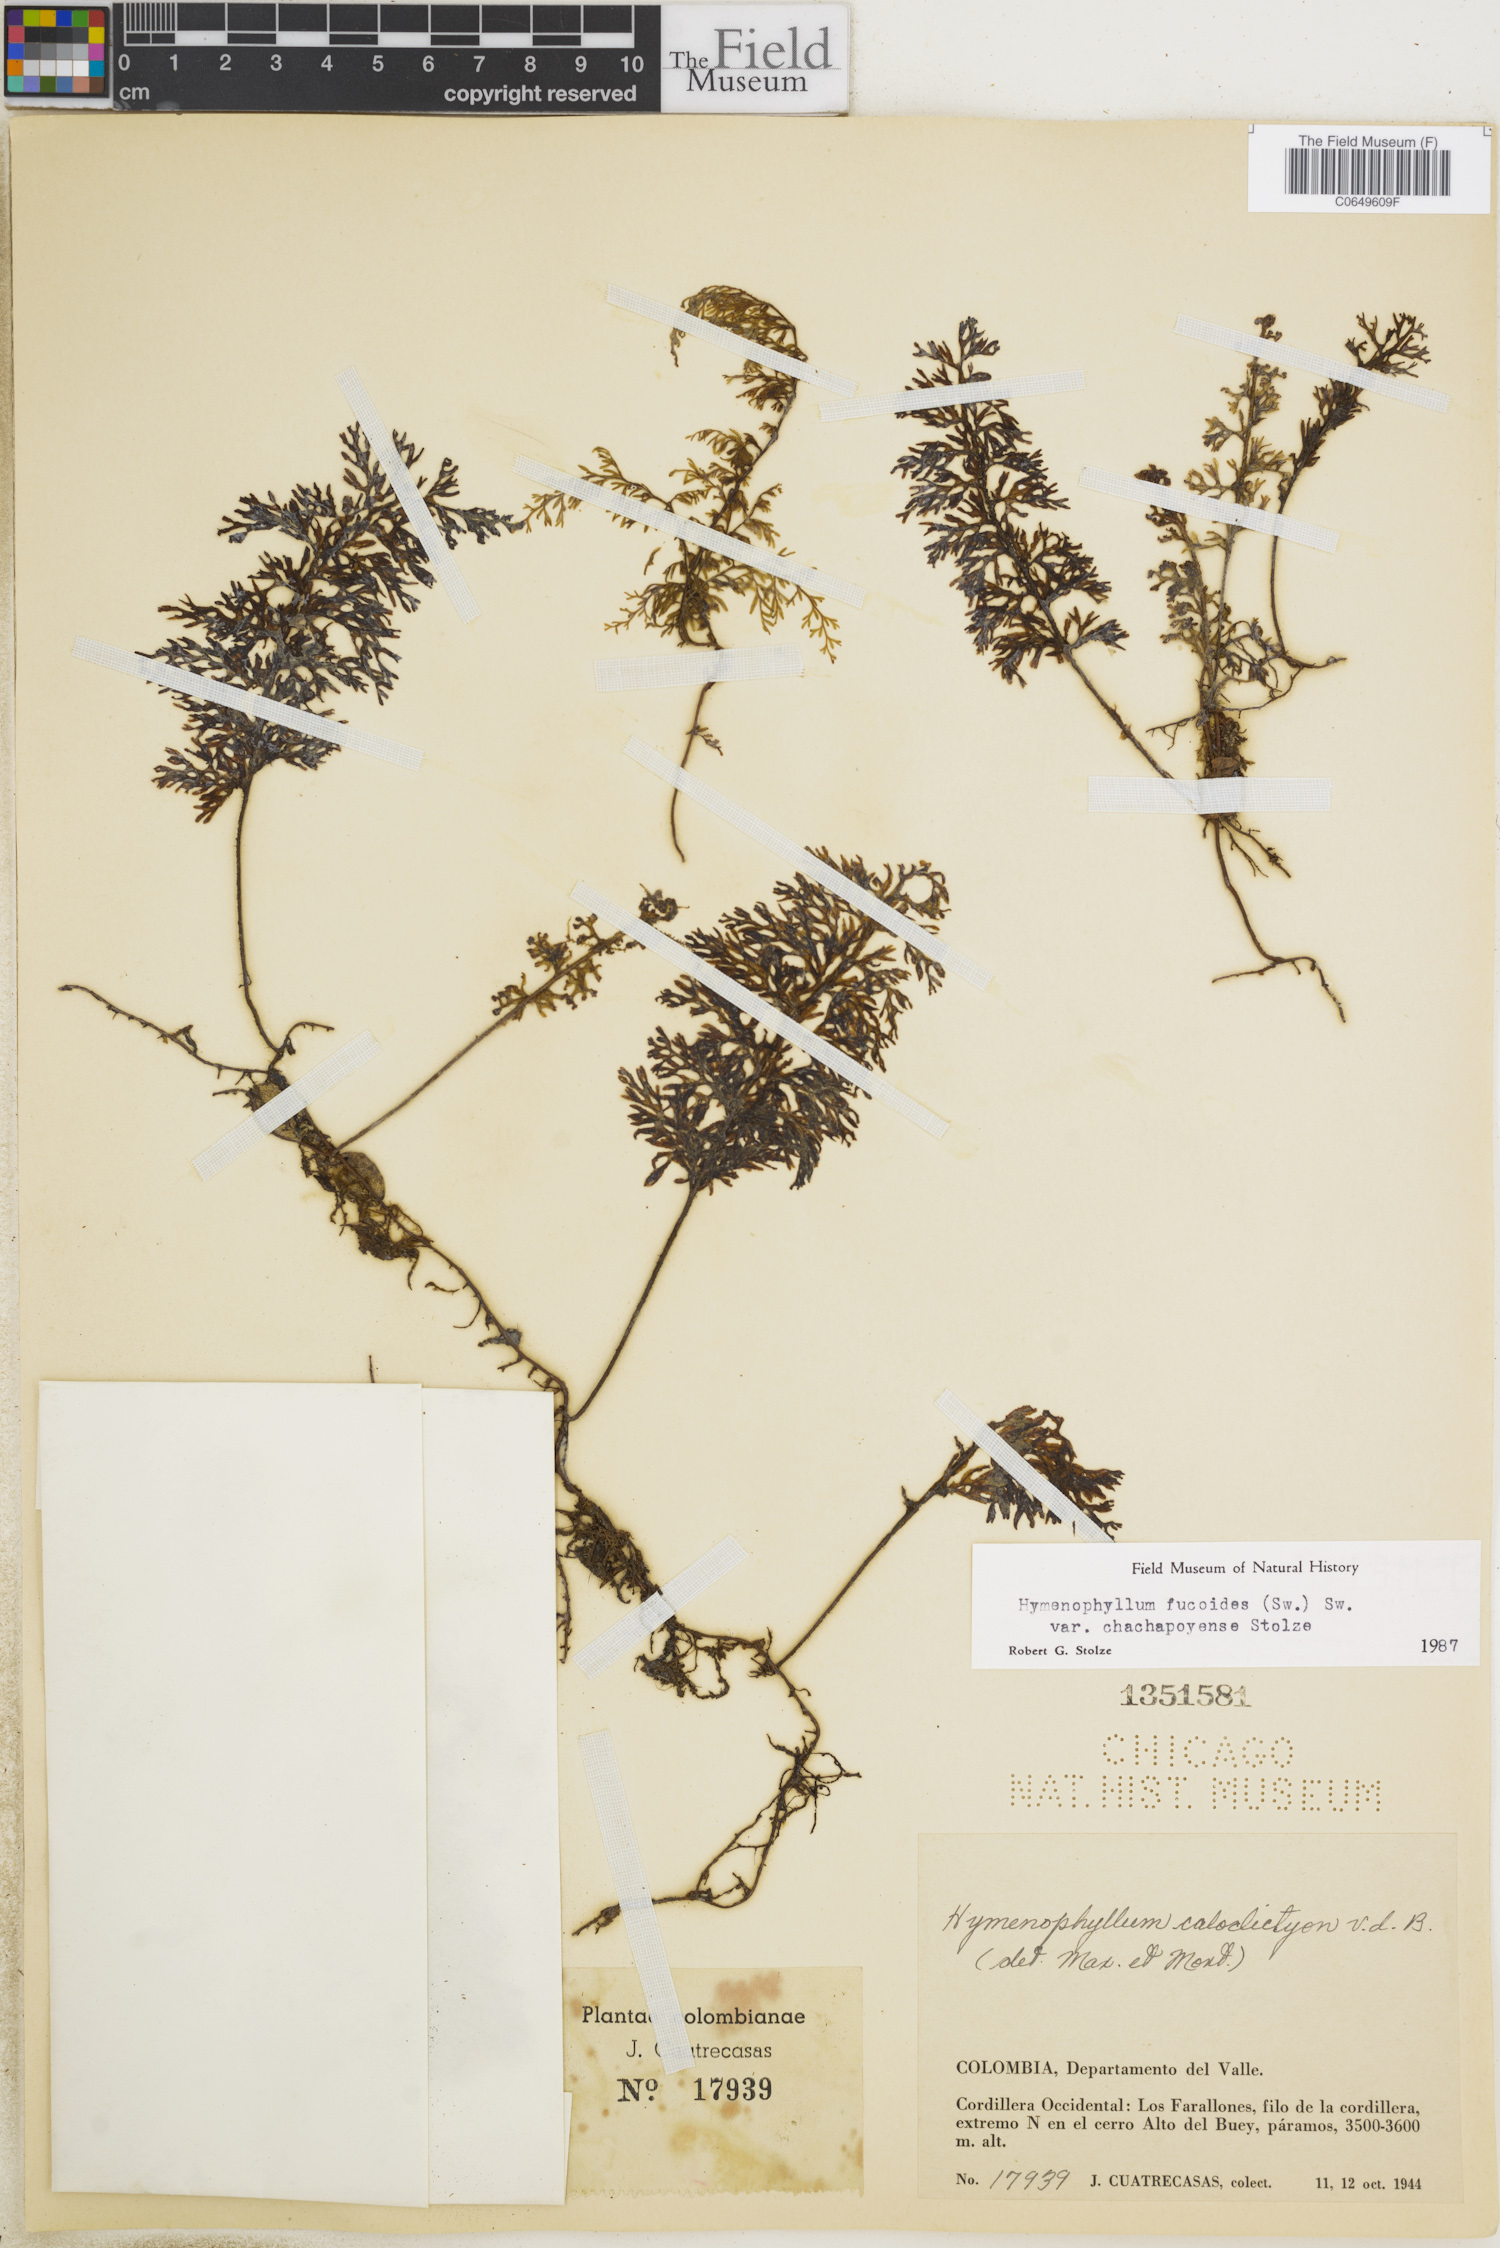 Hymenophyllum fucoides var. chachapoyense image